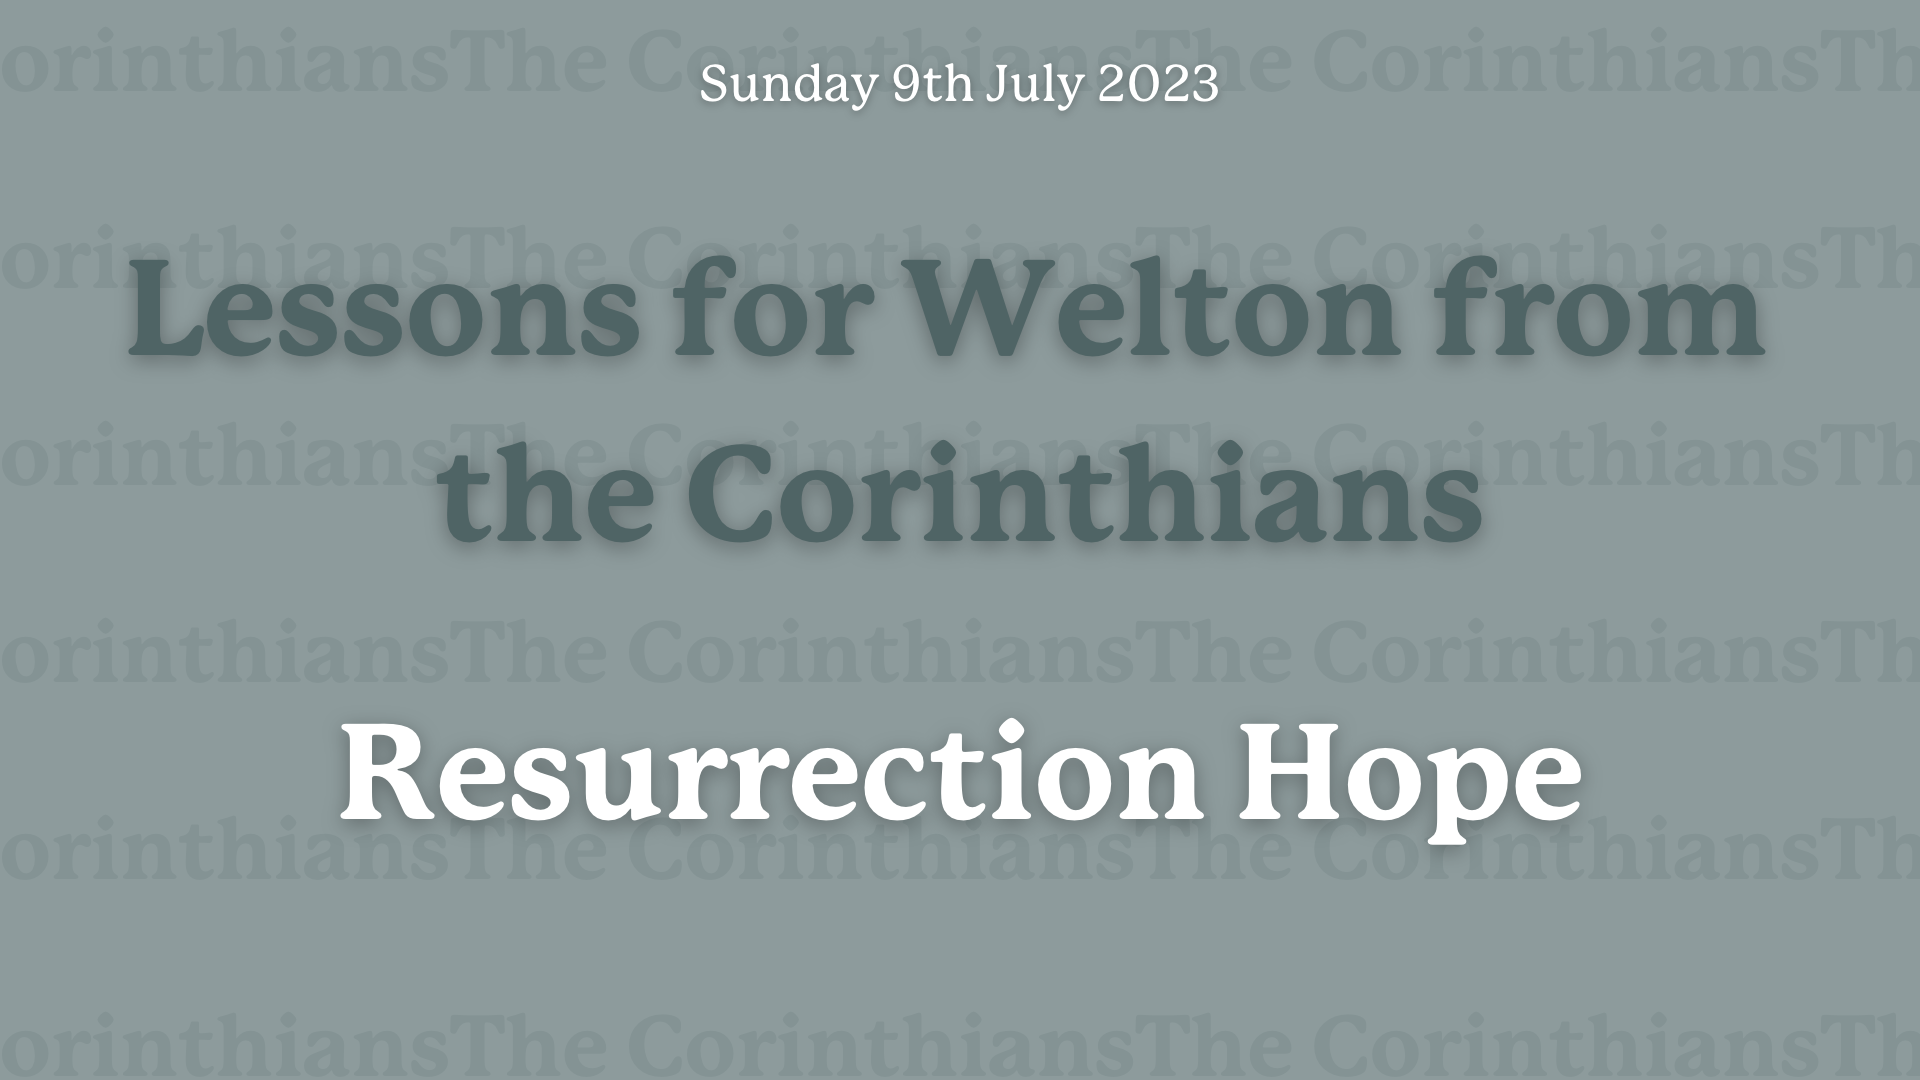 Sunday Service - Resurrection Hope